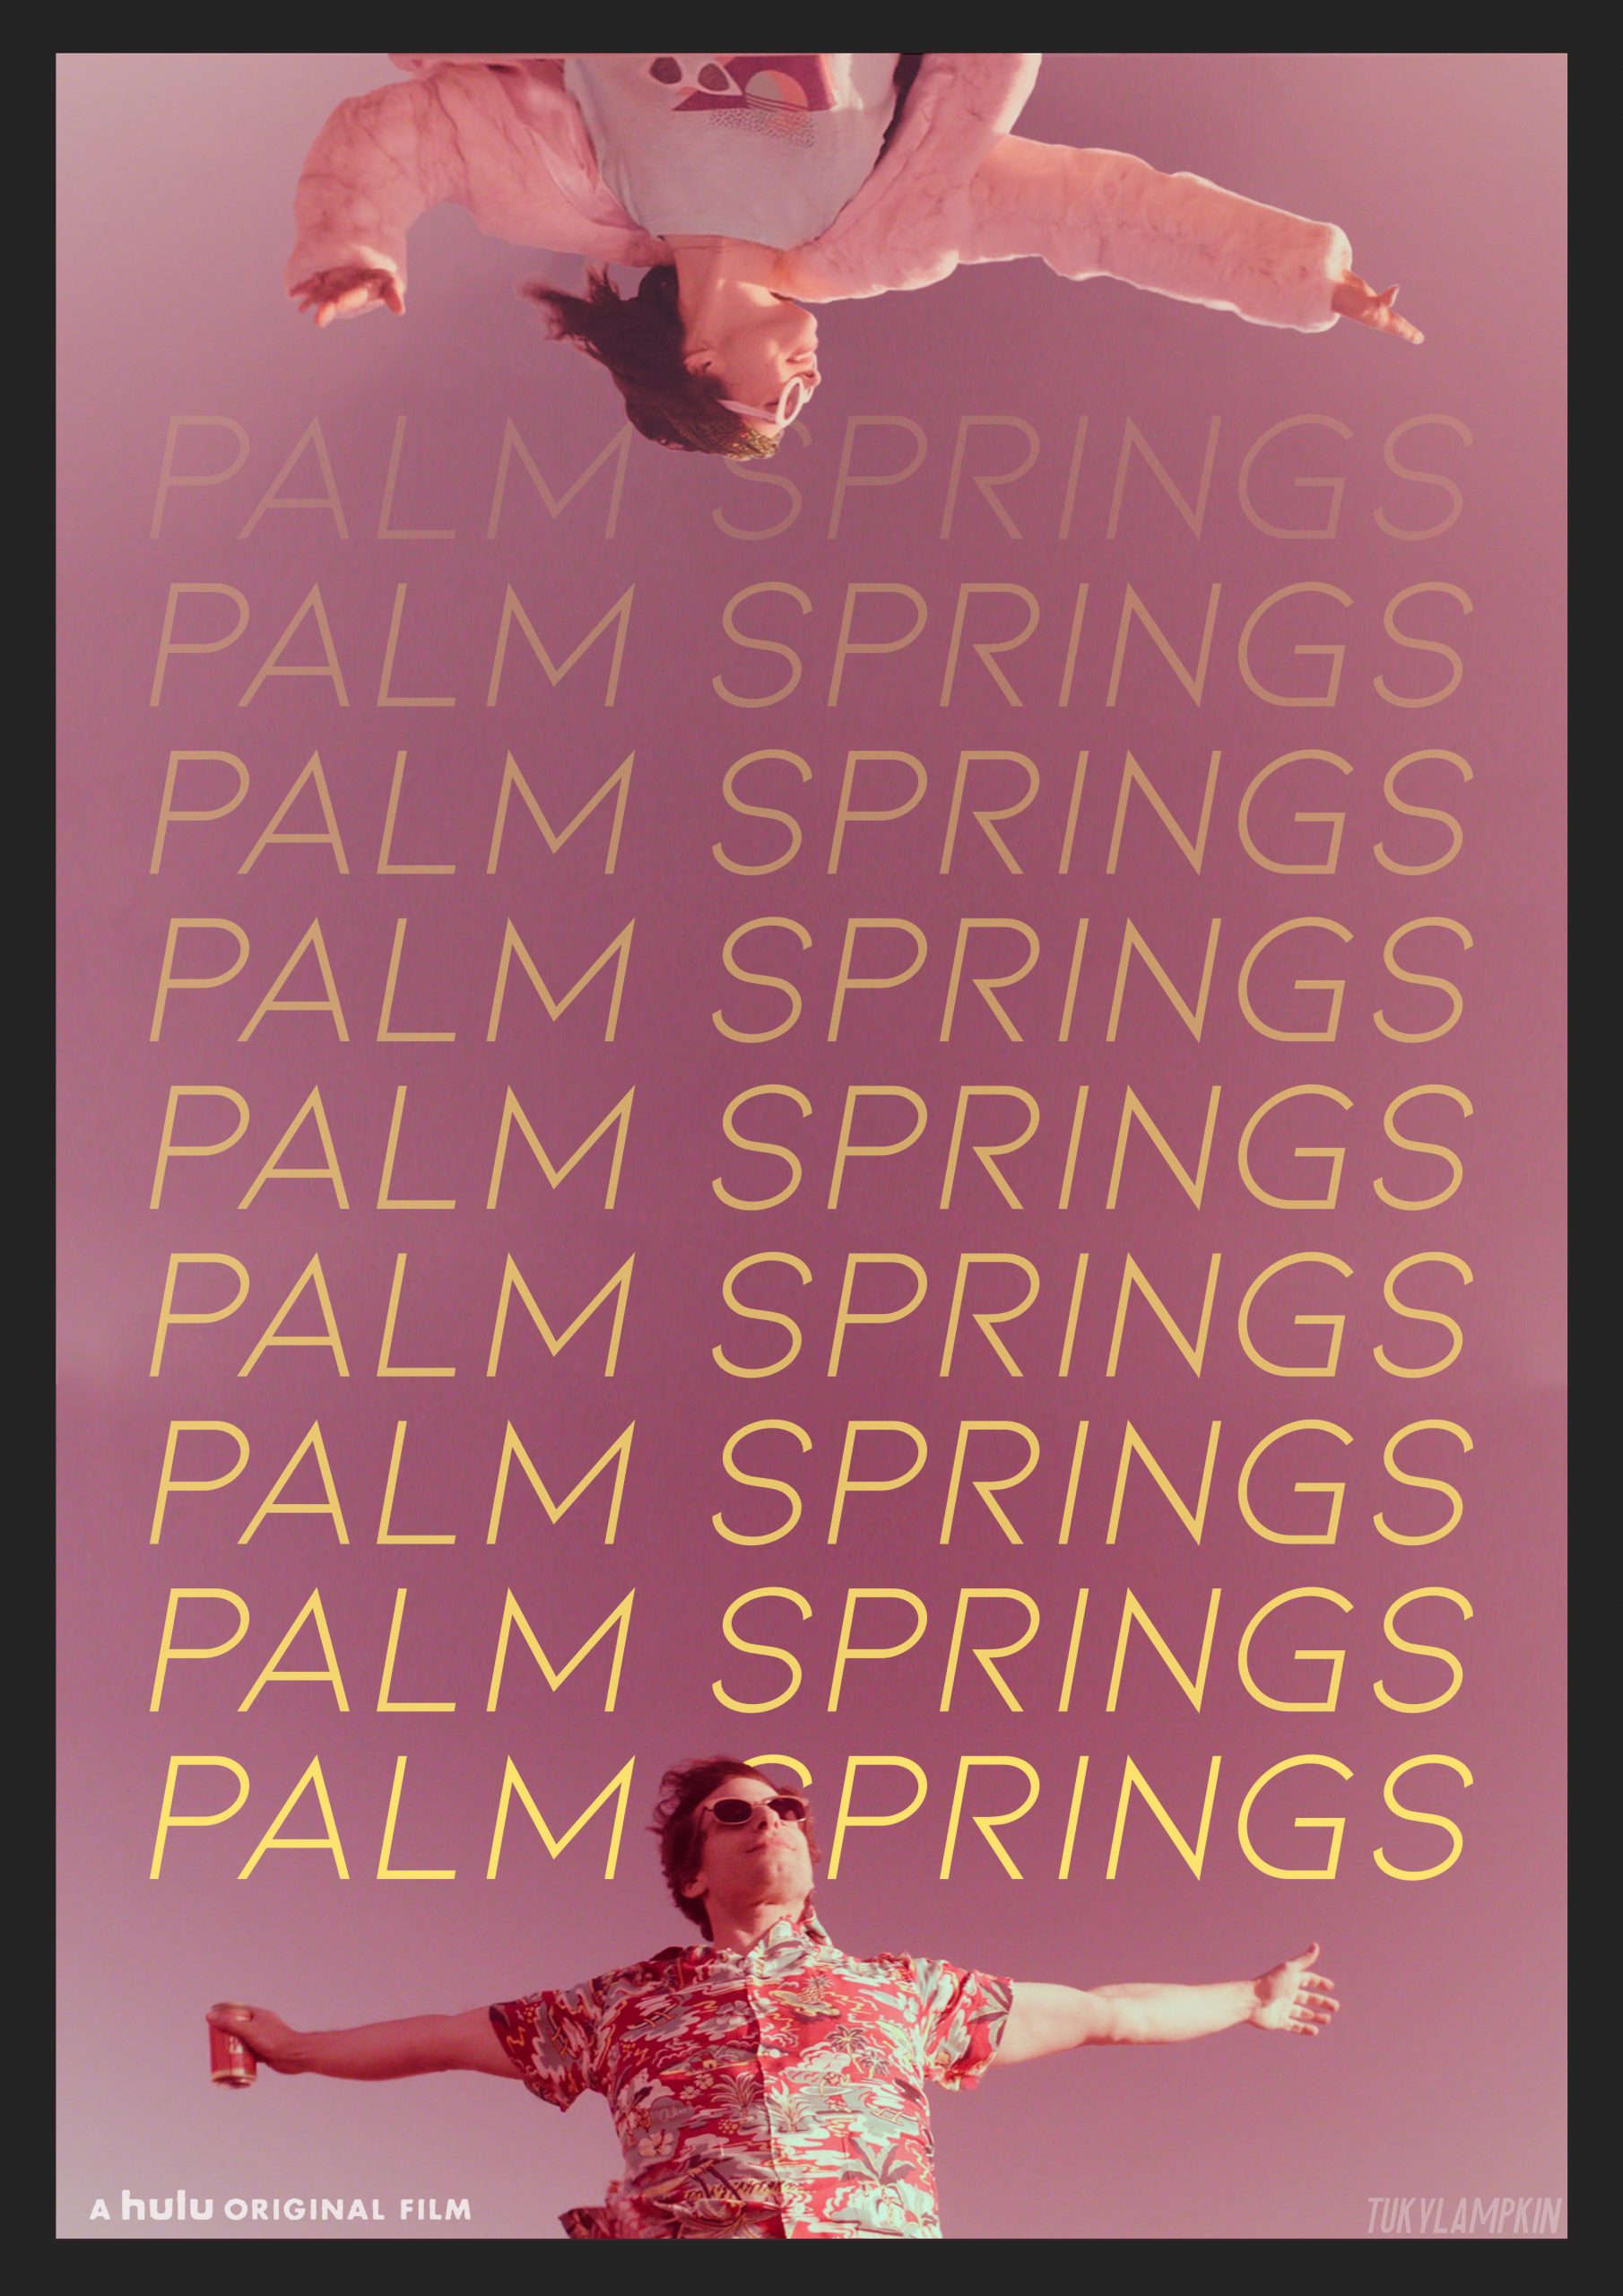 Palm Springs